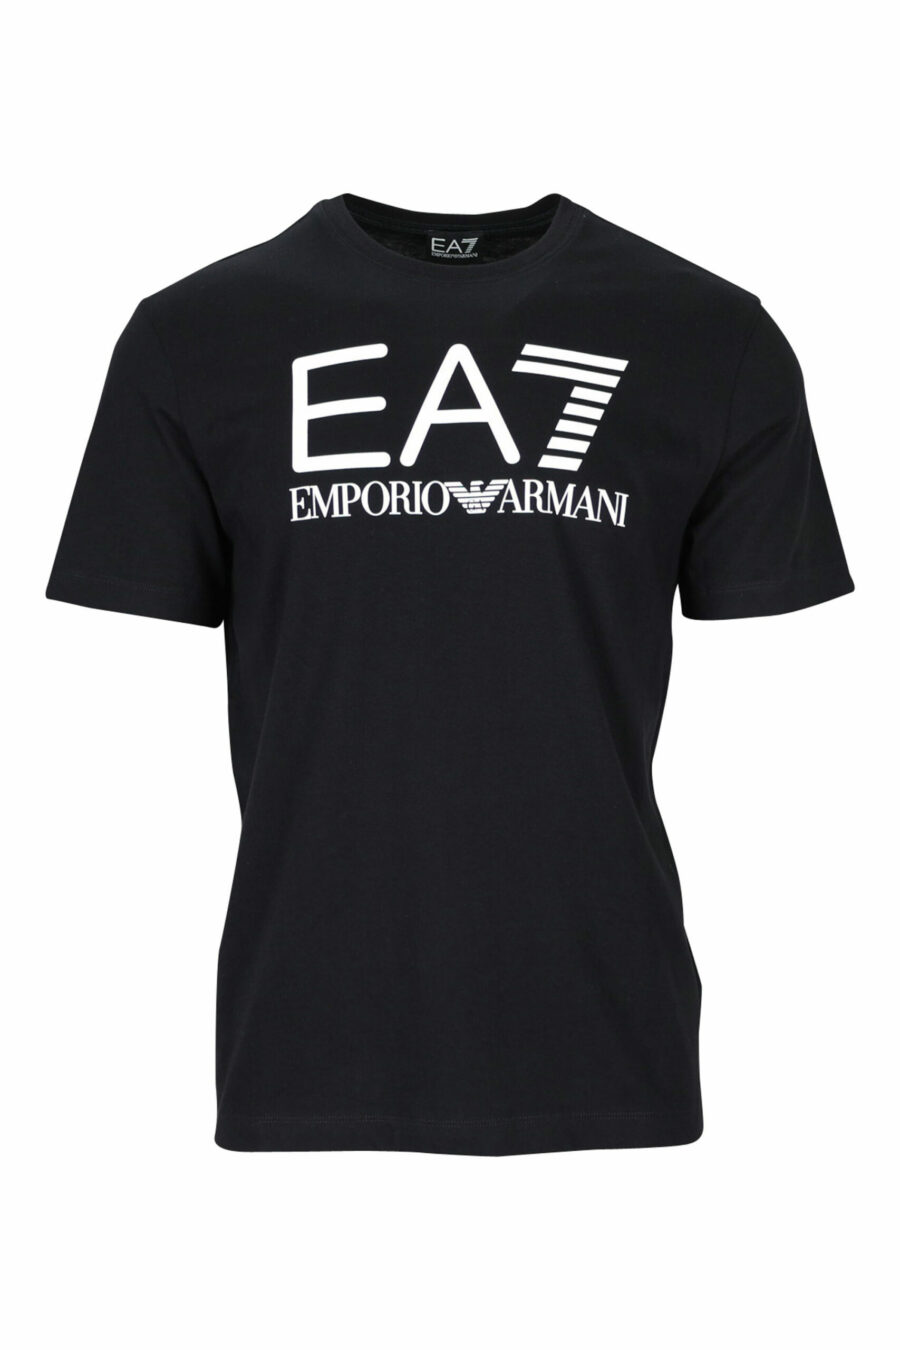 EA7 - Camiseta negra con maxilogo 